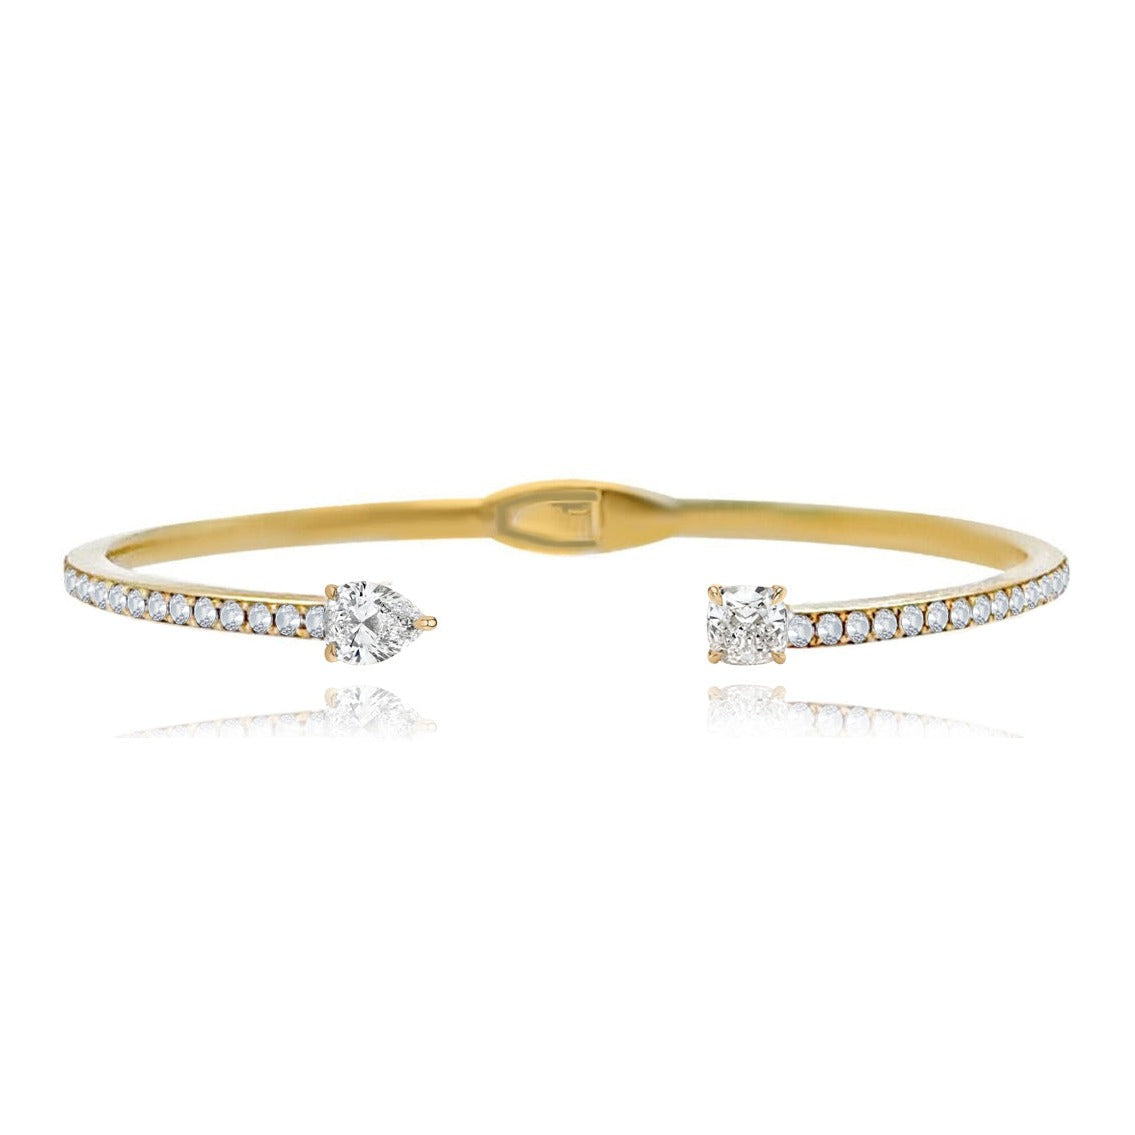 Two Diamonds Pave Cuff Bangle – Alev Jewelry